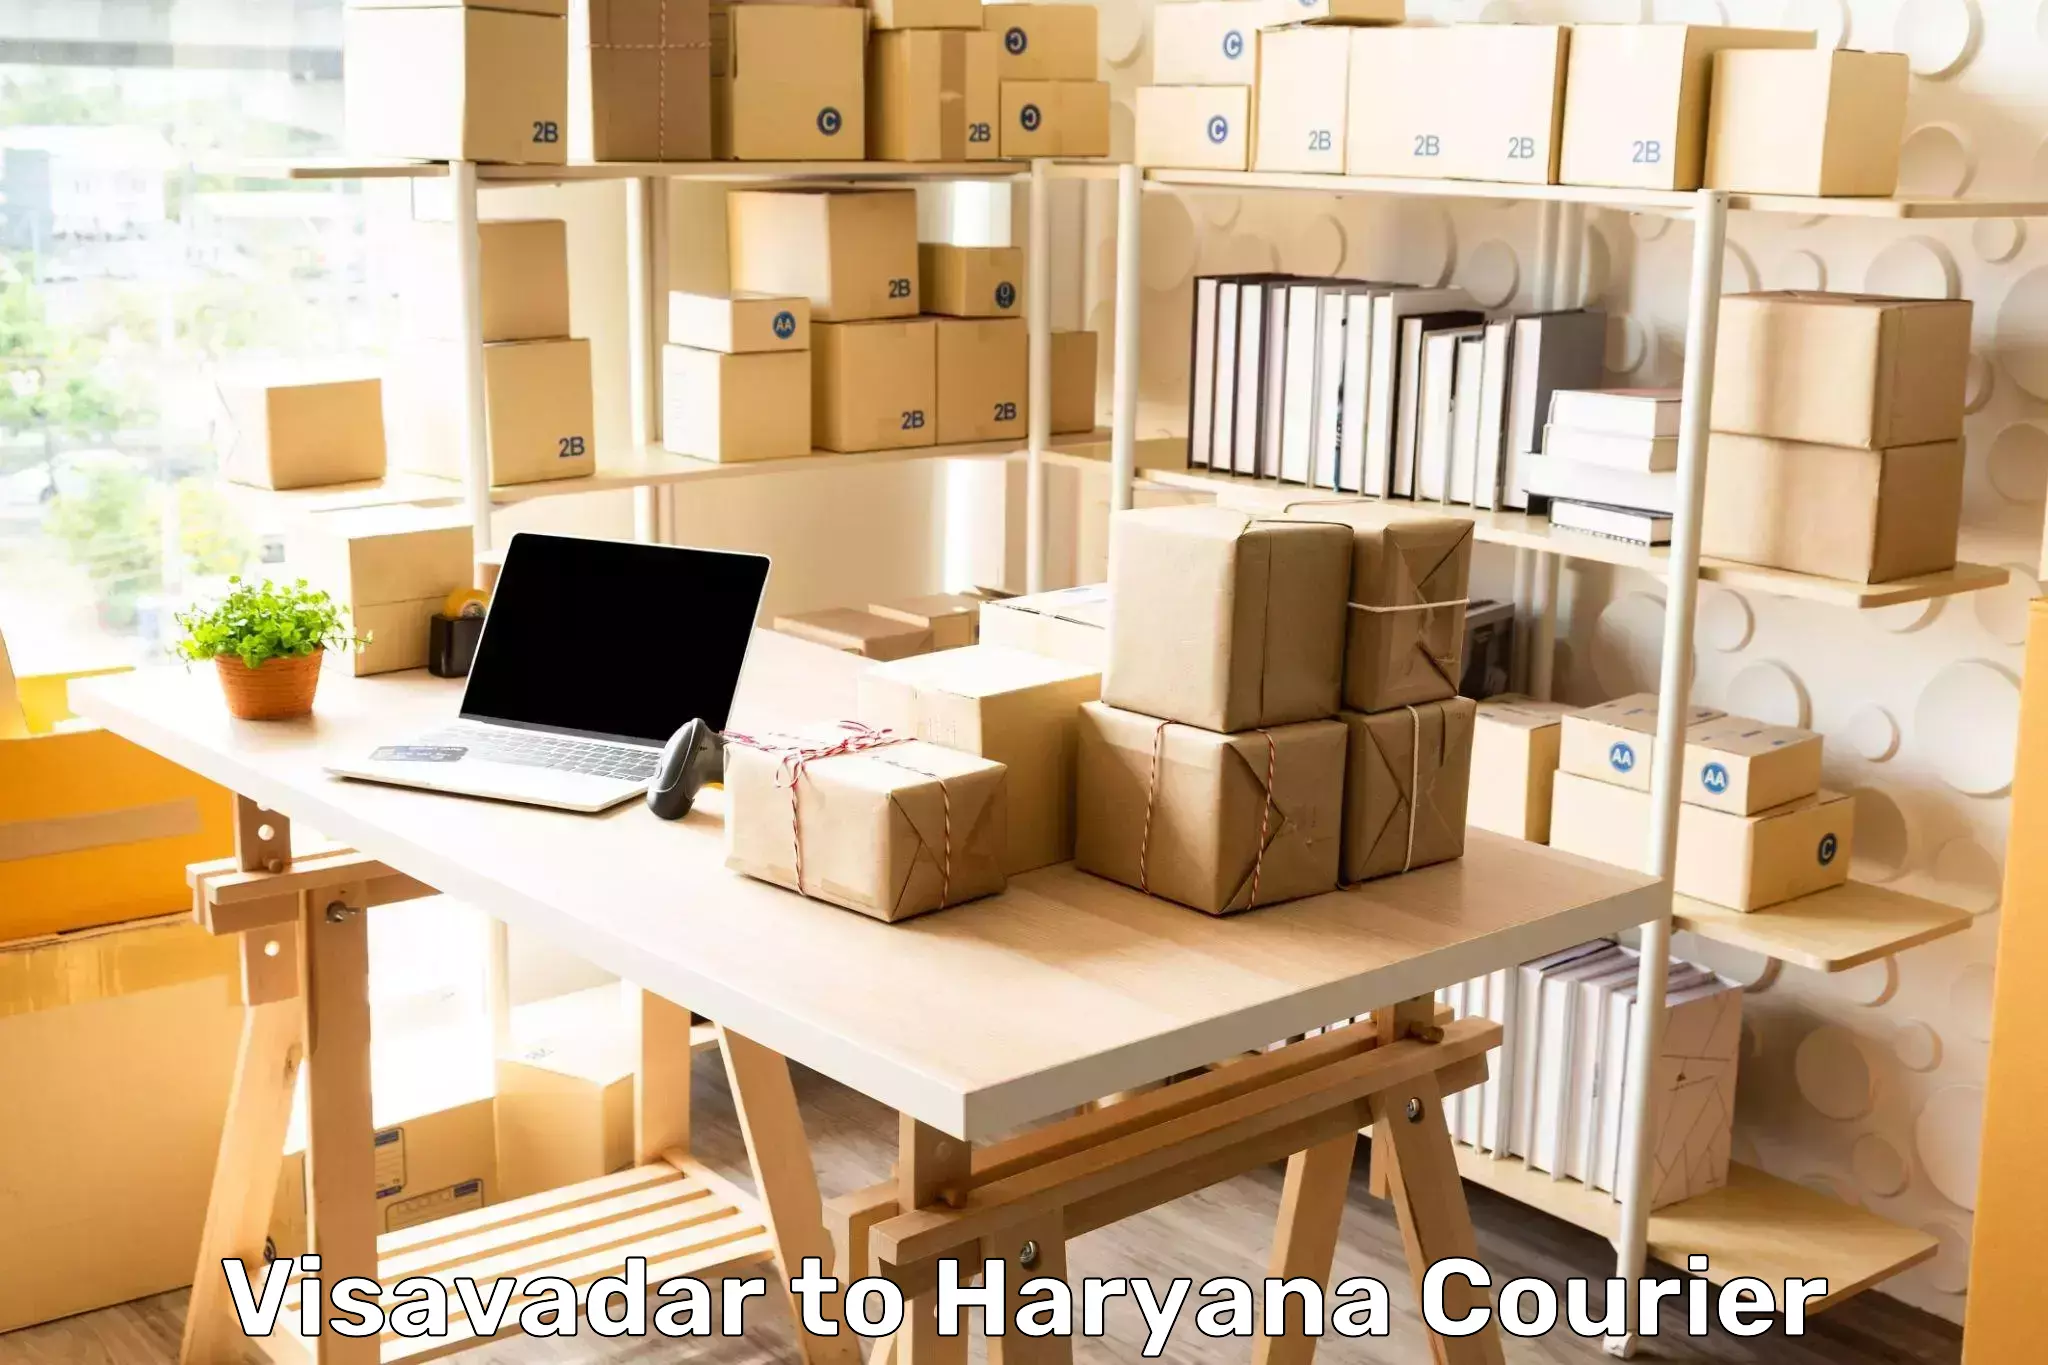 Multi-city courier Visavadar to Haryana